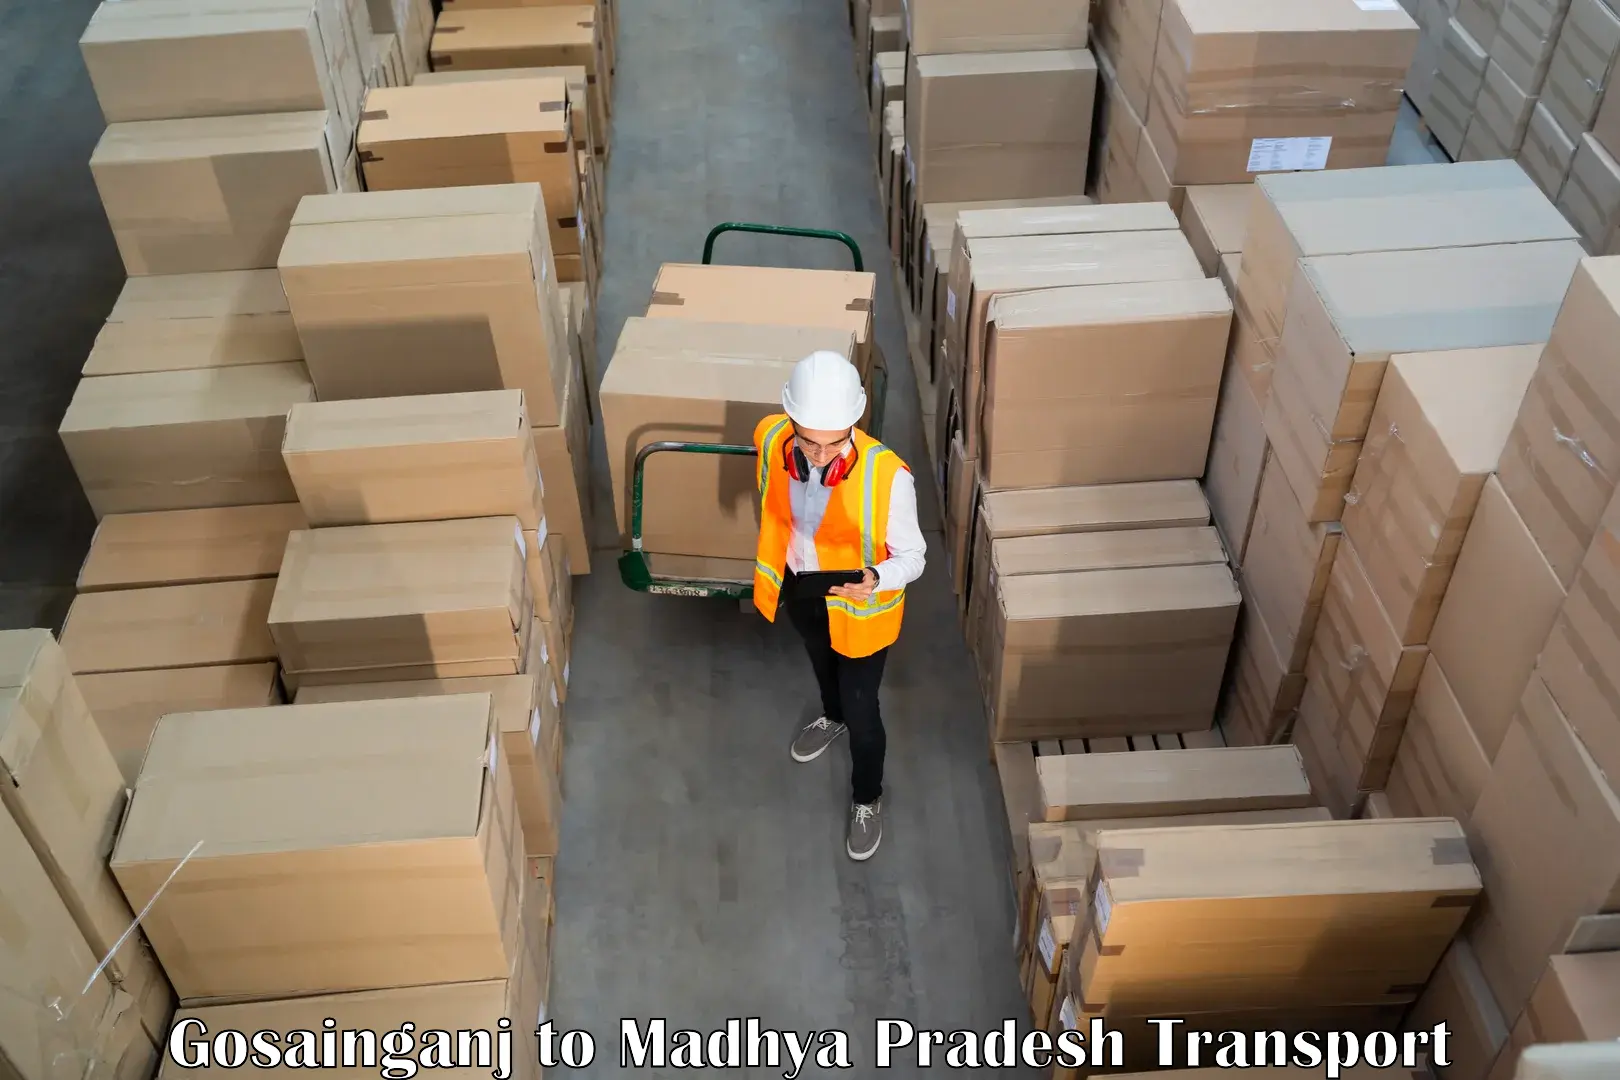 Delivery service Gosainganj to Begumganj